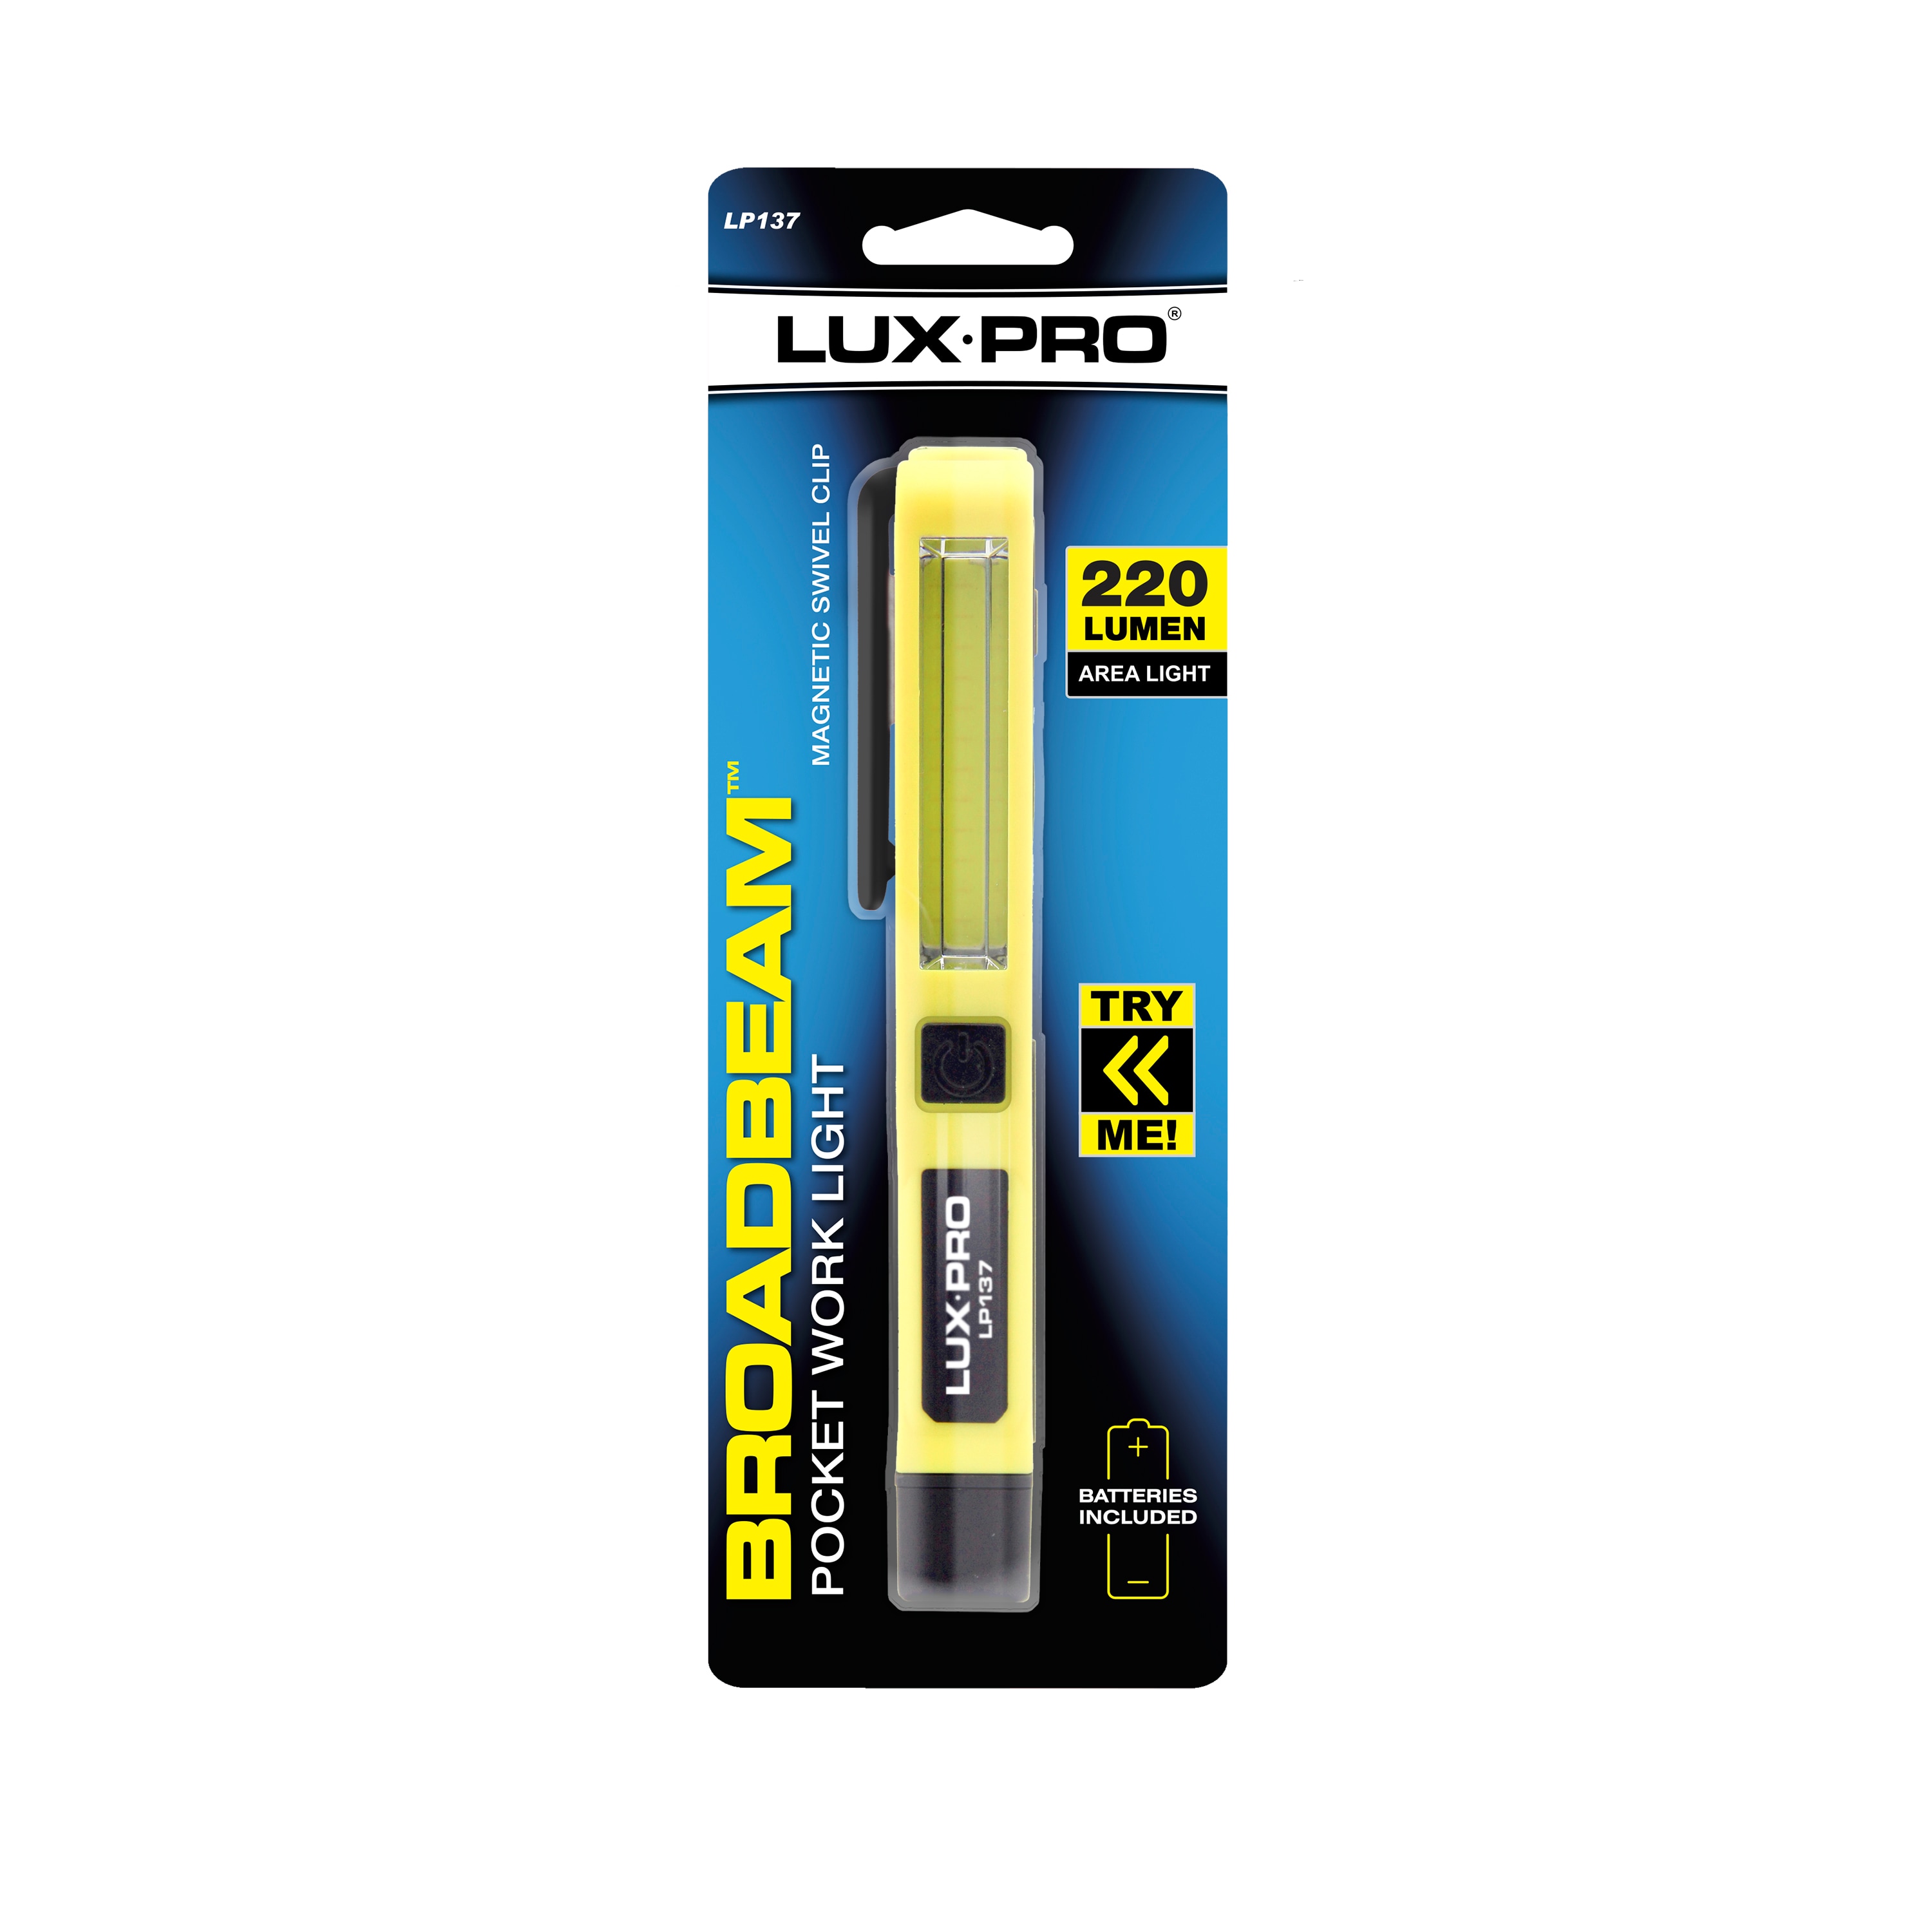 LUXPRO Multi-Function Utility 537 Lumen LED Flashlight and Work